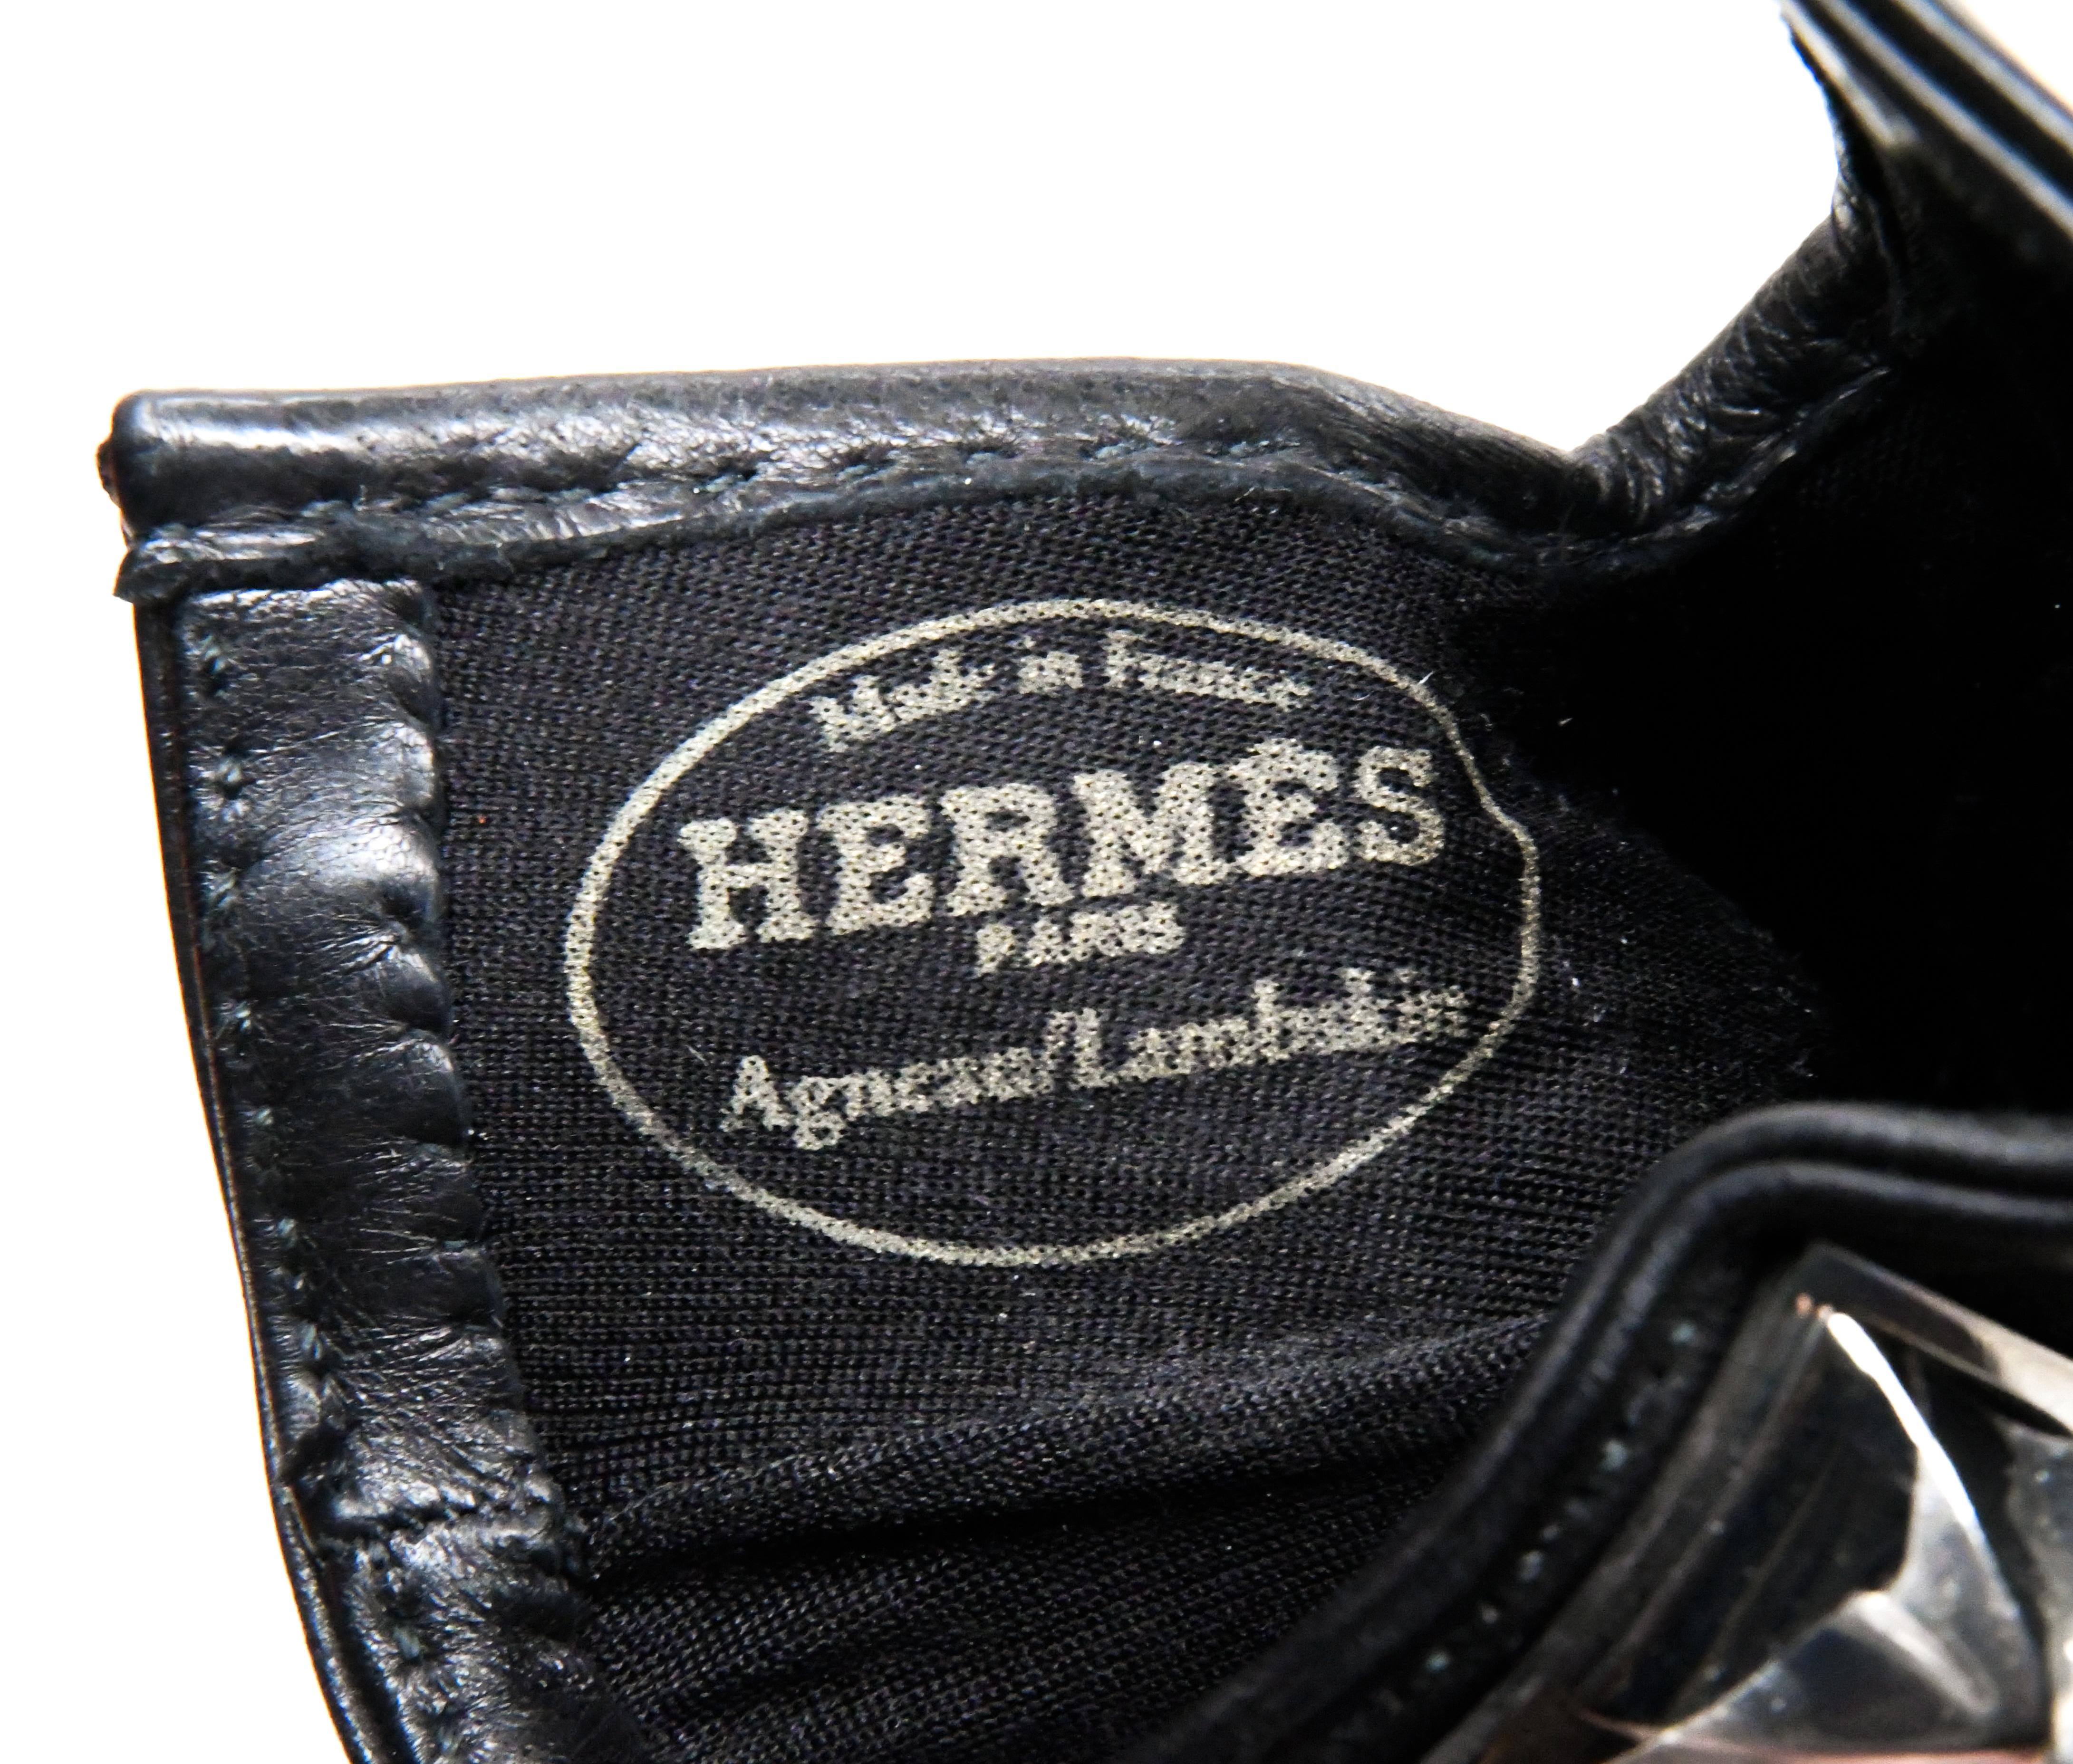 Hermès Medor Collier de Chien Lambskin Gloves New In Box Size 8 In New Condition In Palm Beach, FL